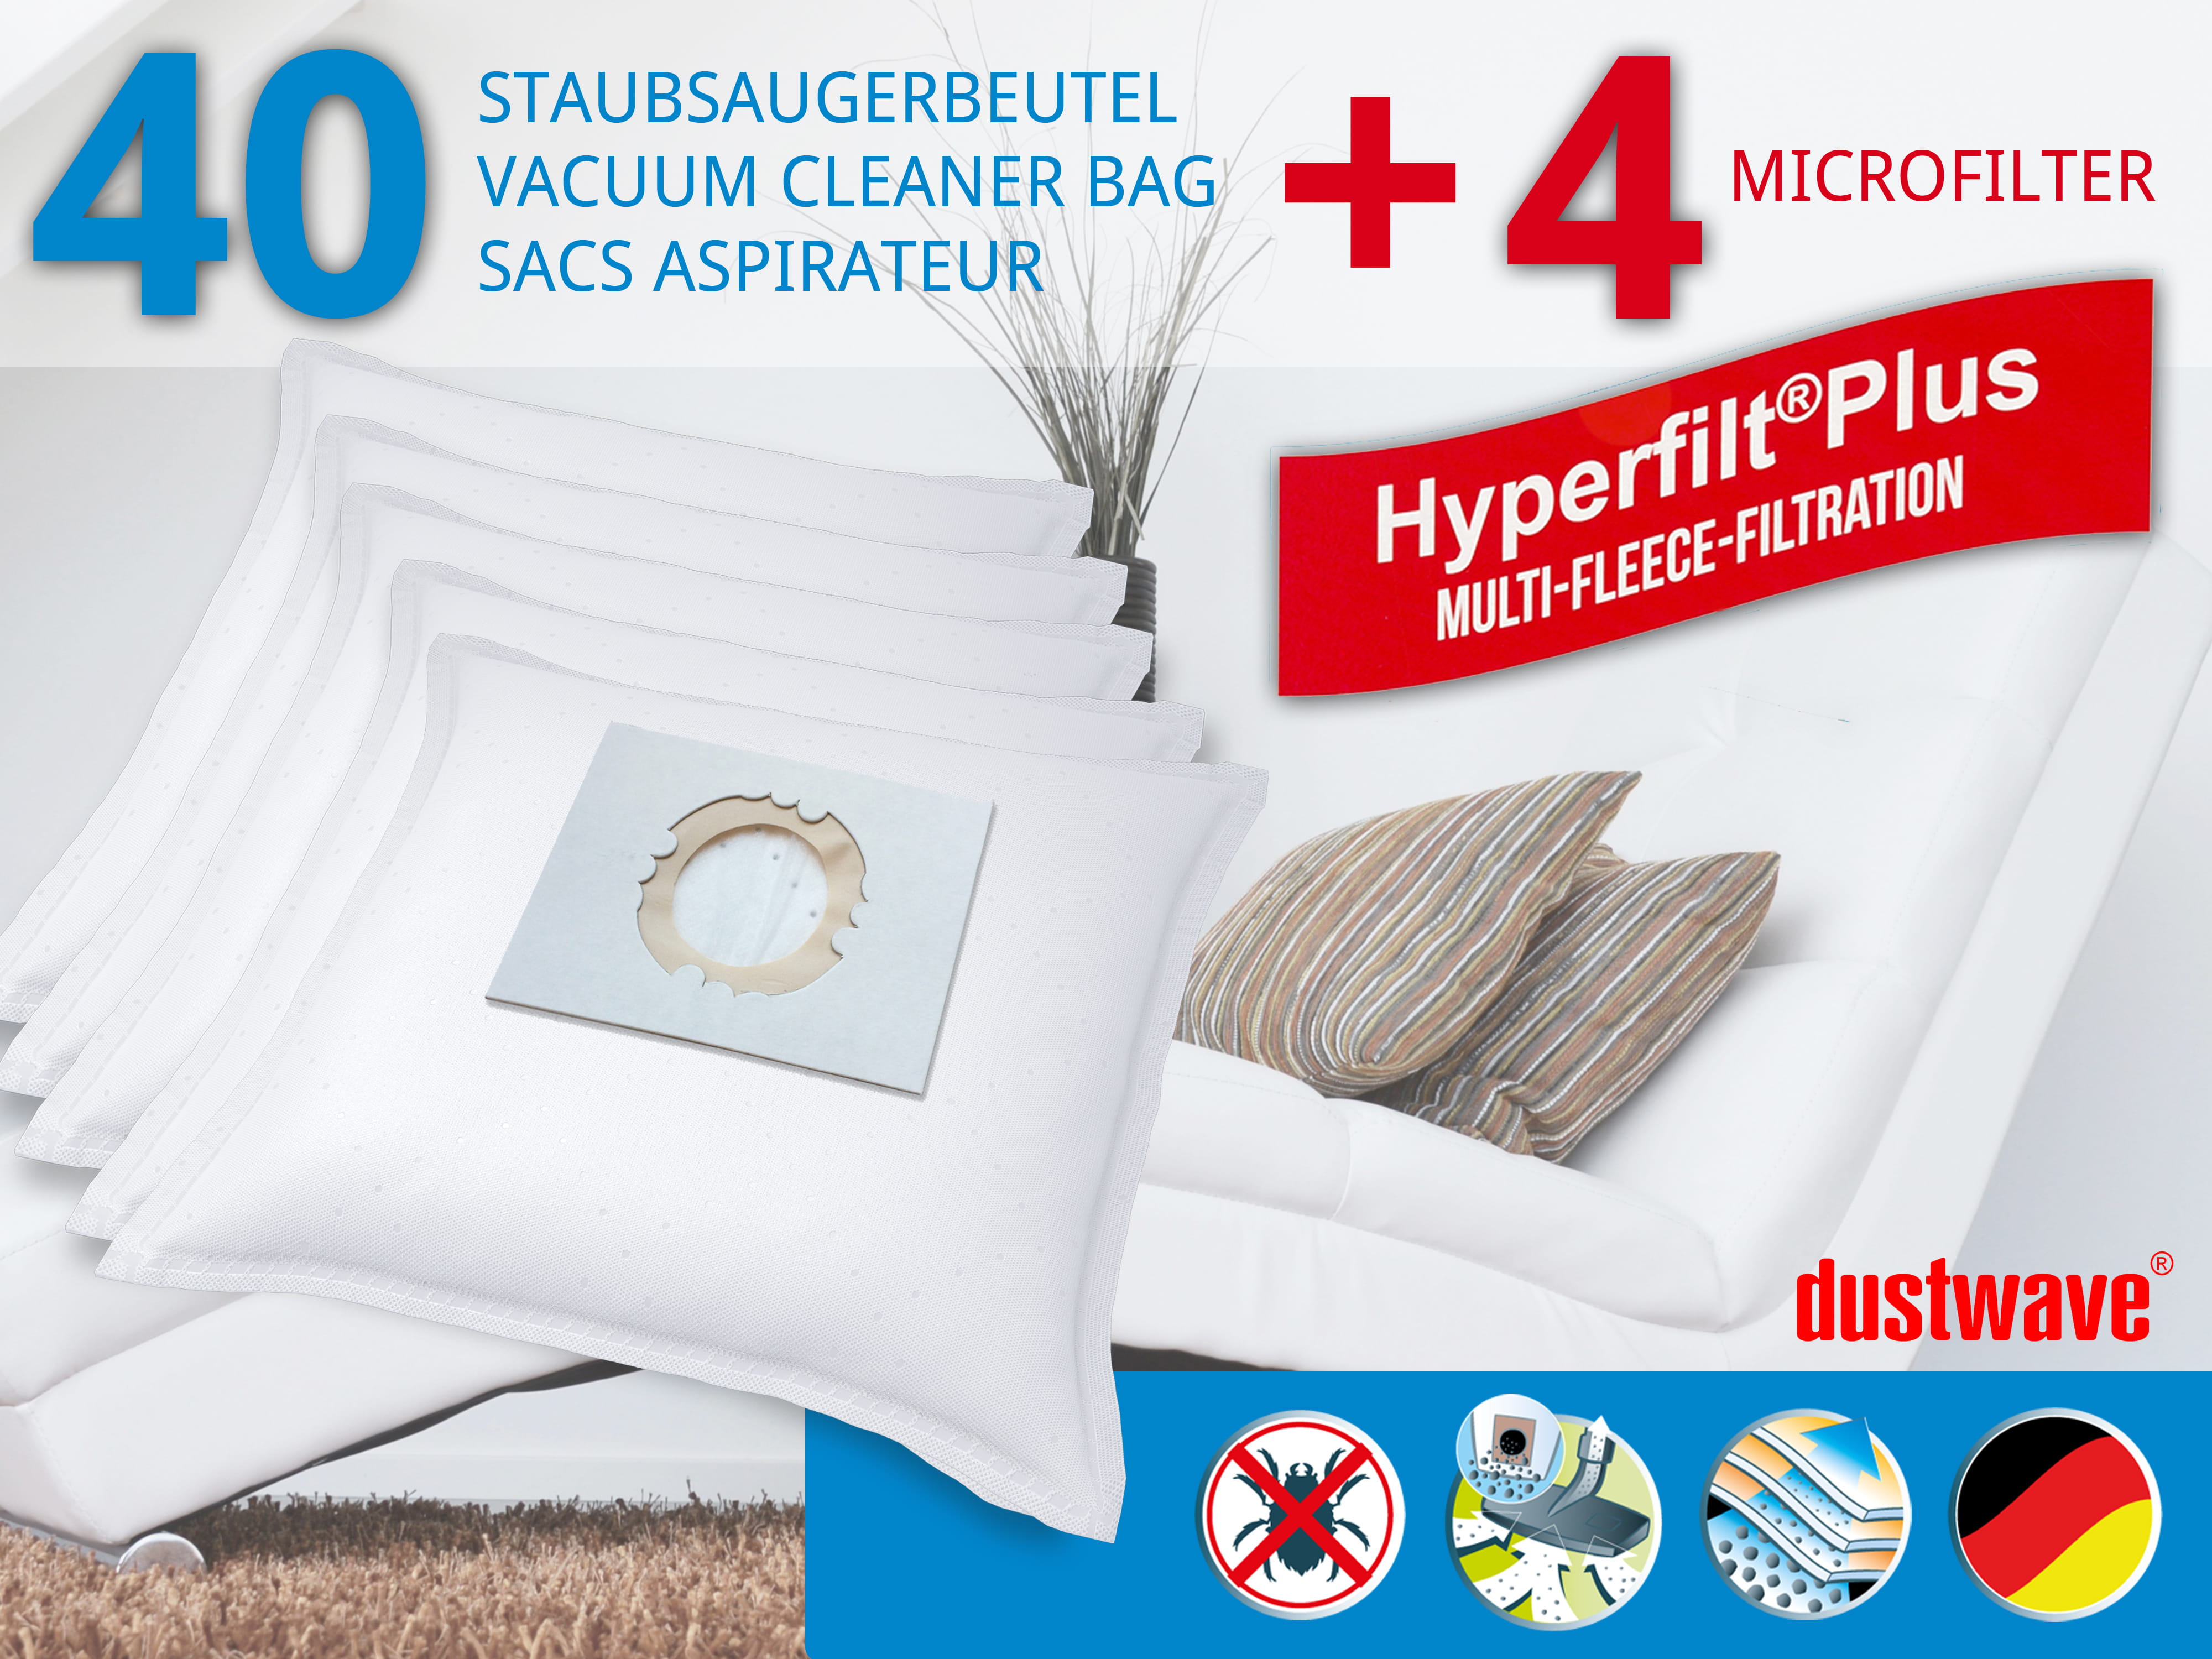 Dustwave® 40 Staubsaugerbeutel für AEG GR30 / Größe 30 - hocheffizient, mehrlagiges Mikrovlies mit Hygieneverschluss - Made in Germany